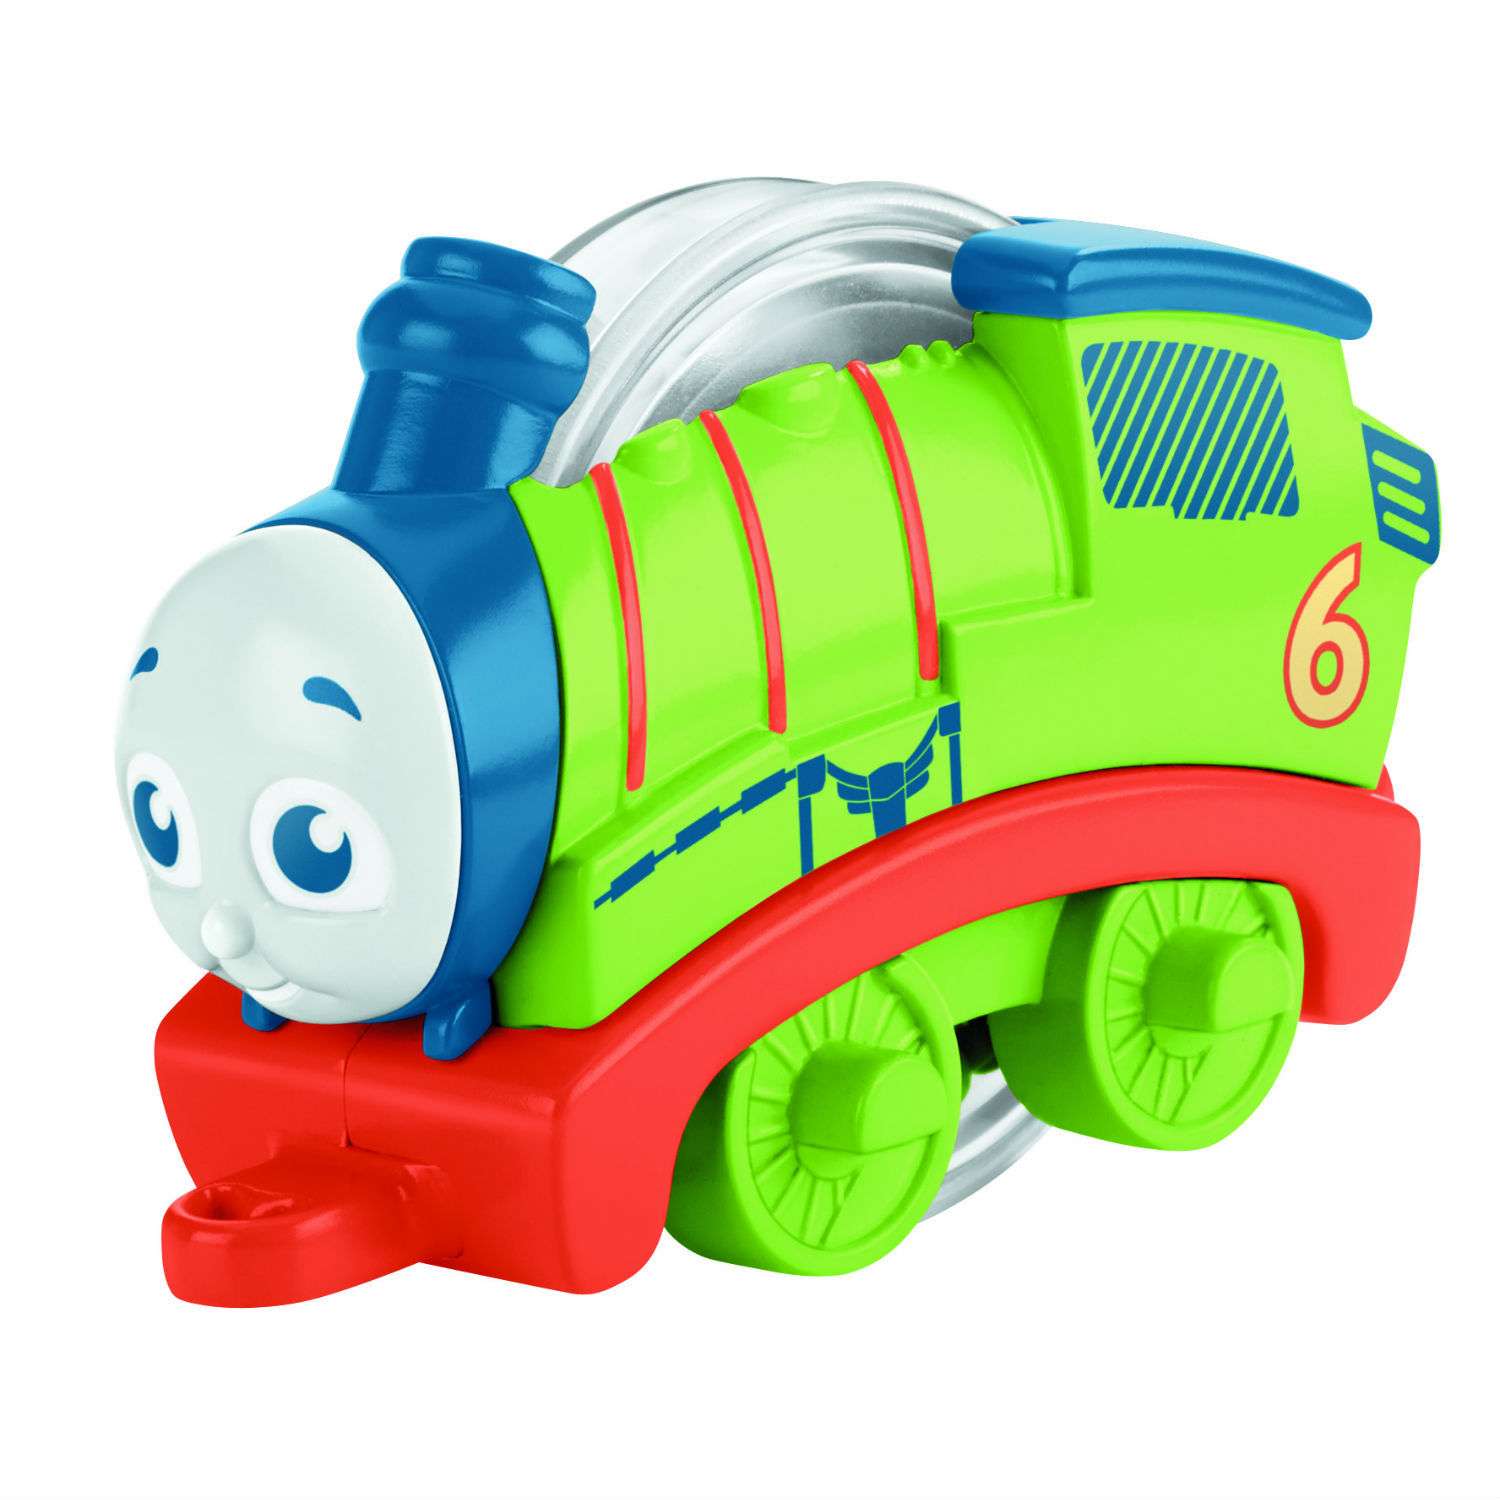 Купить поезд мальчику. Паровозик dtn23 с крутящимися шариками в ассортименте Thomas&friends.